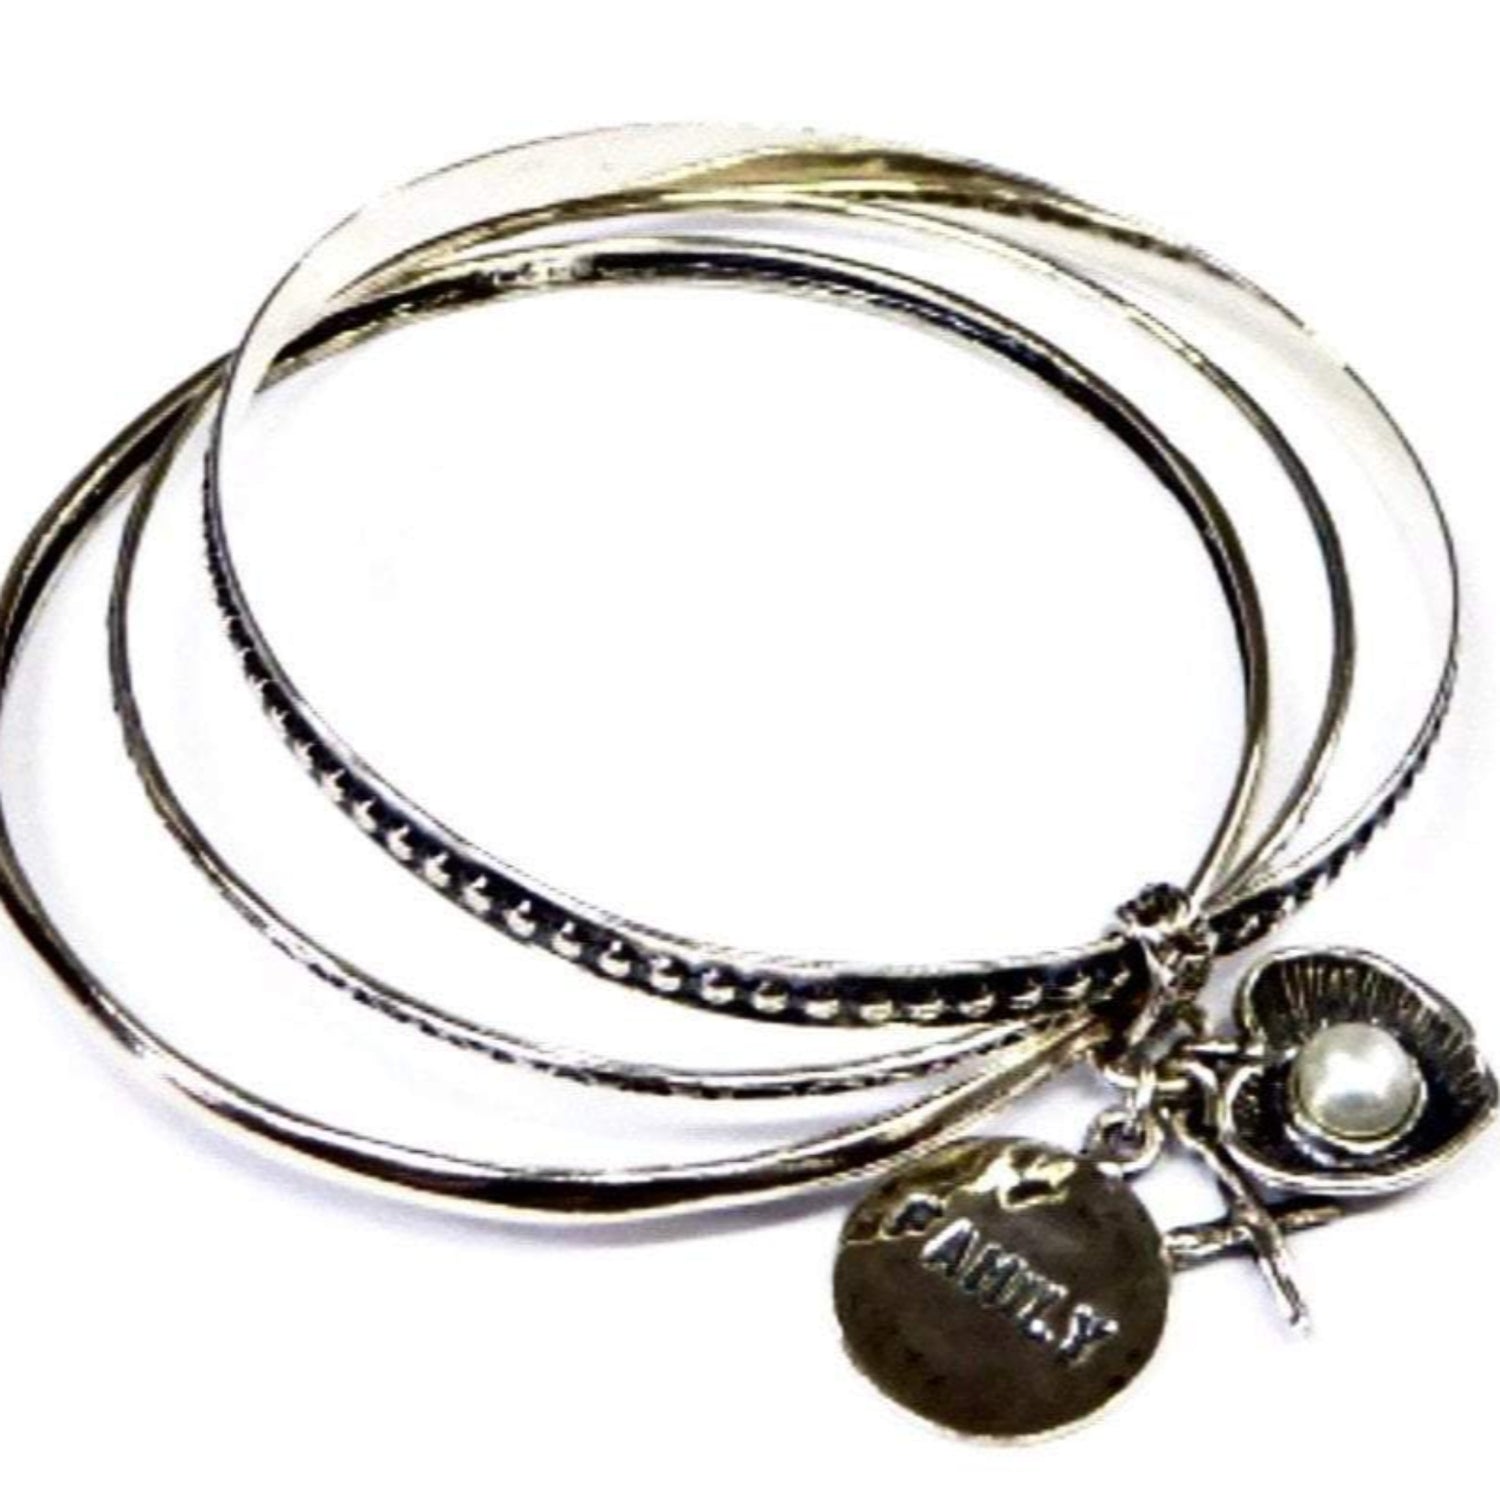 Bluenoemi Bracelets bracelet / silver Charms Bracelet Set Sterling Silver 925 Bluenoemi  Jewelry. Family, cross, heart, pearl.